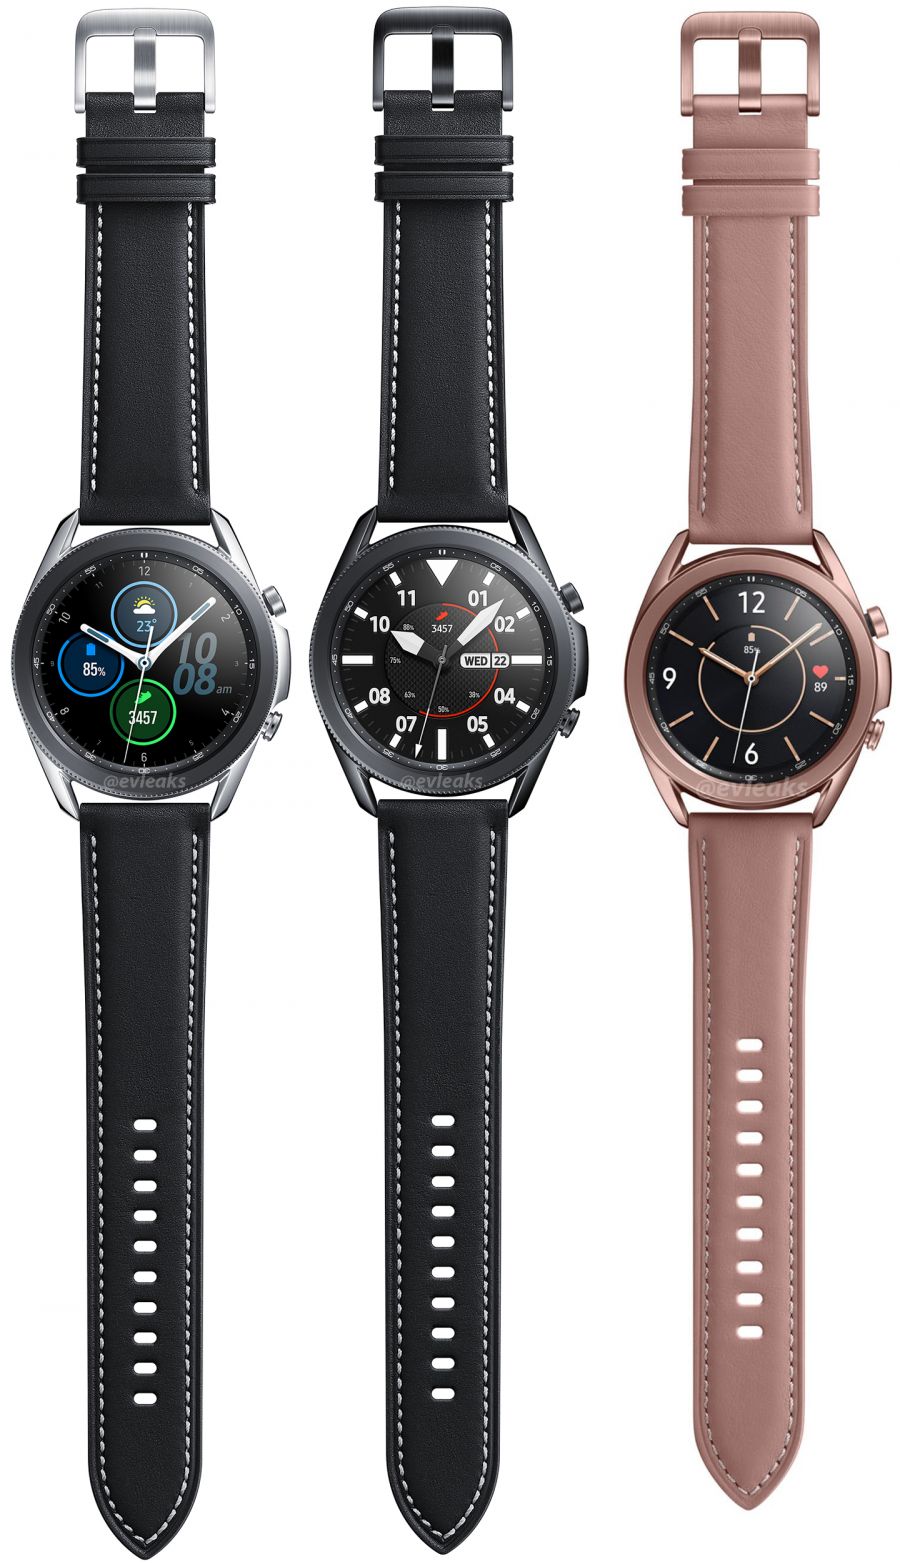 Смарт-часы Samsung Galaxy Watch 3 предстали в различных вариантах исполнения